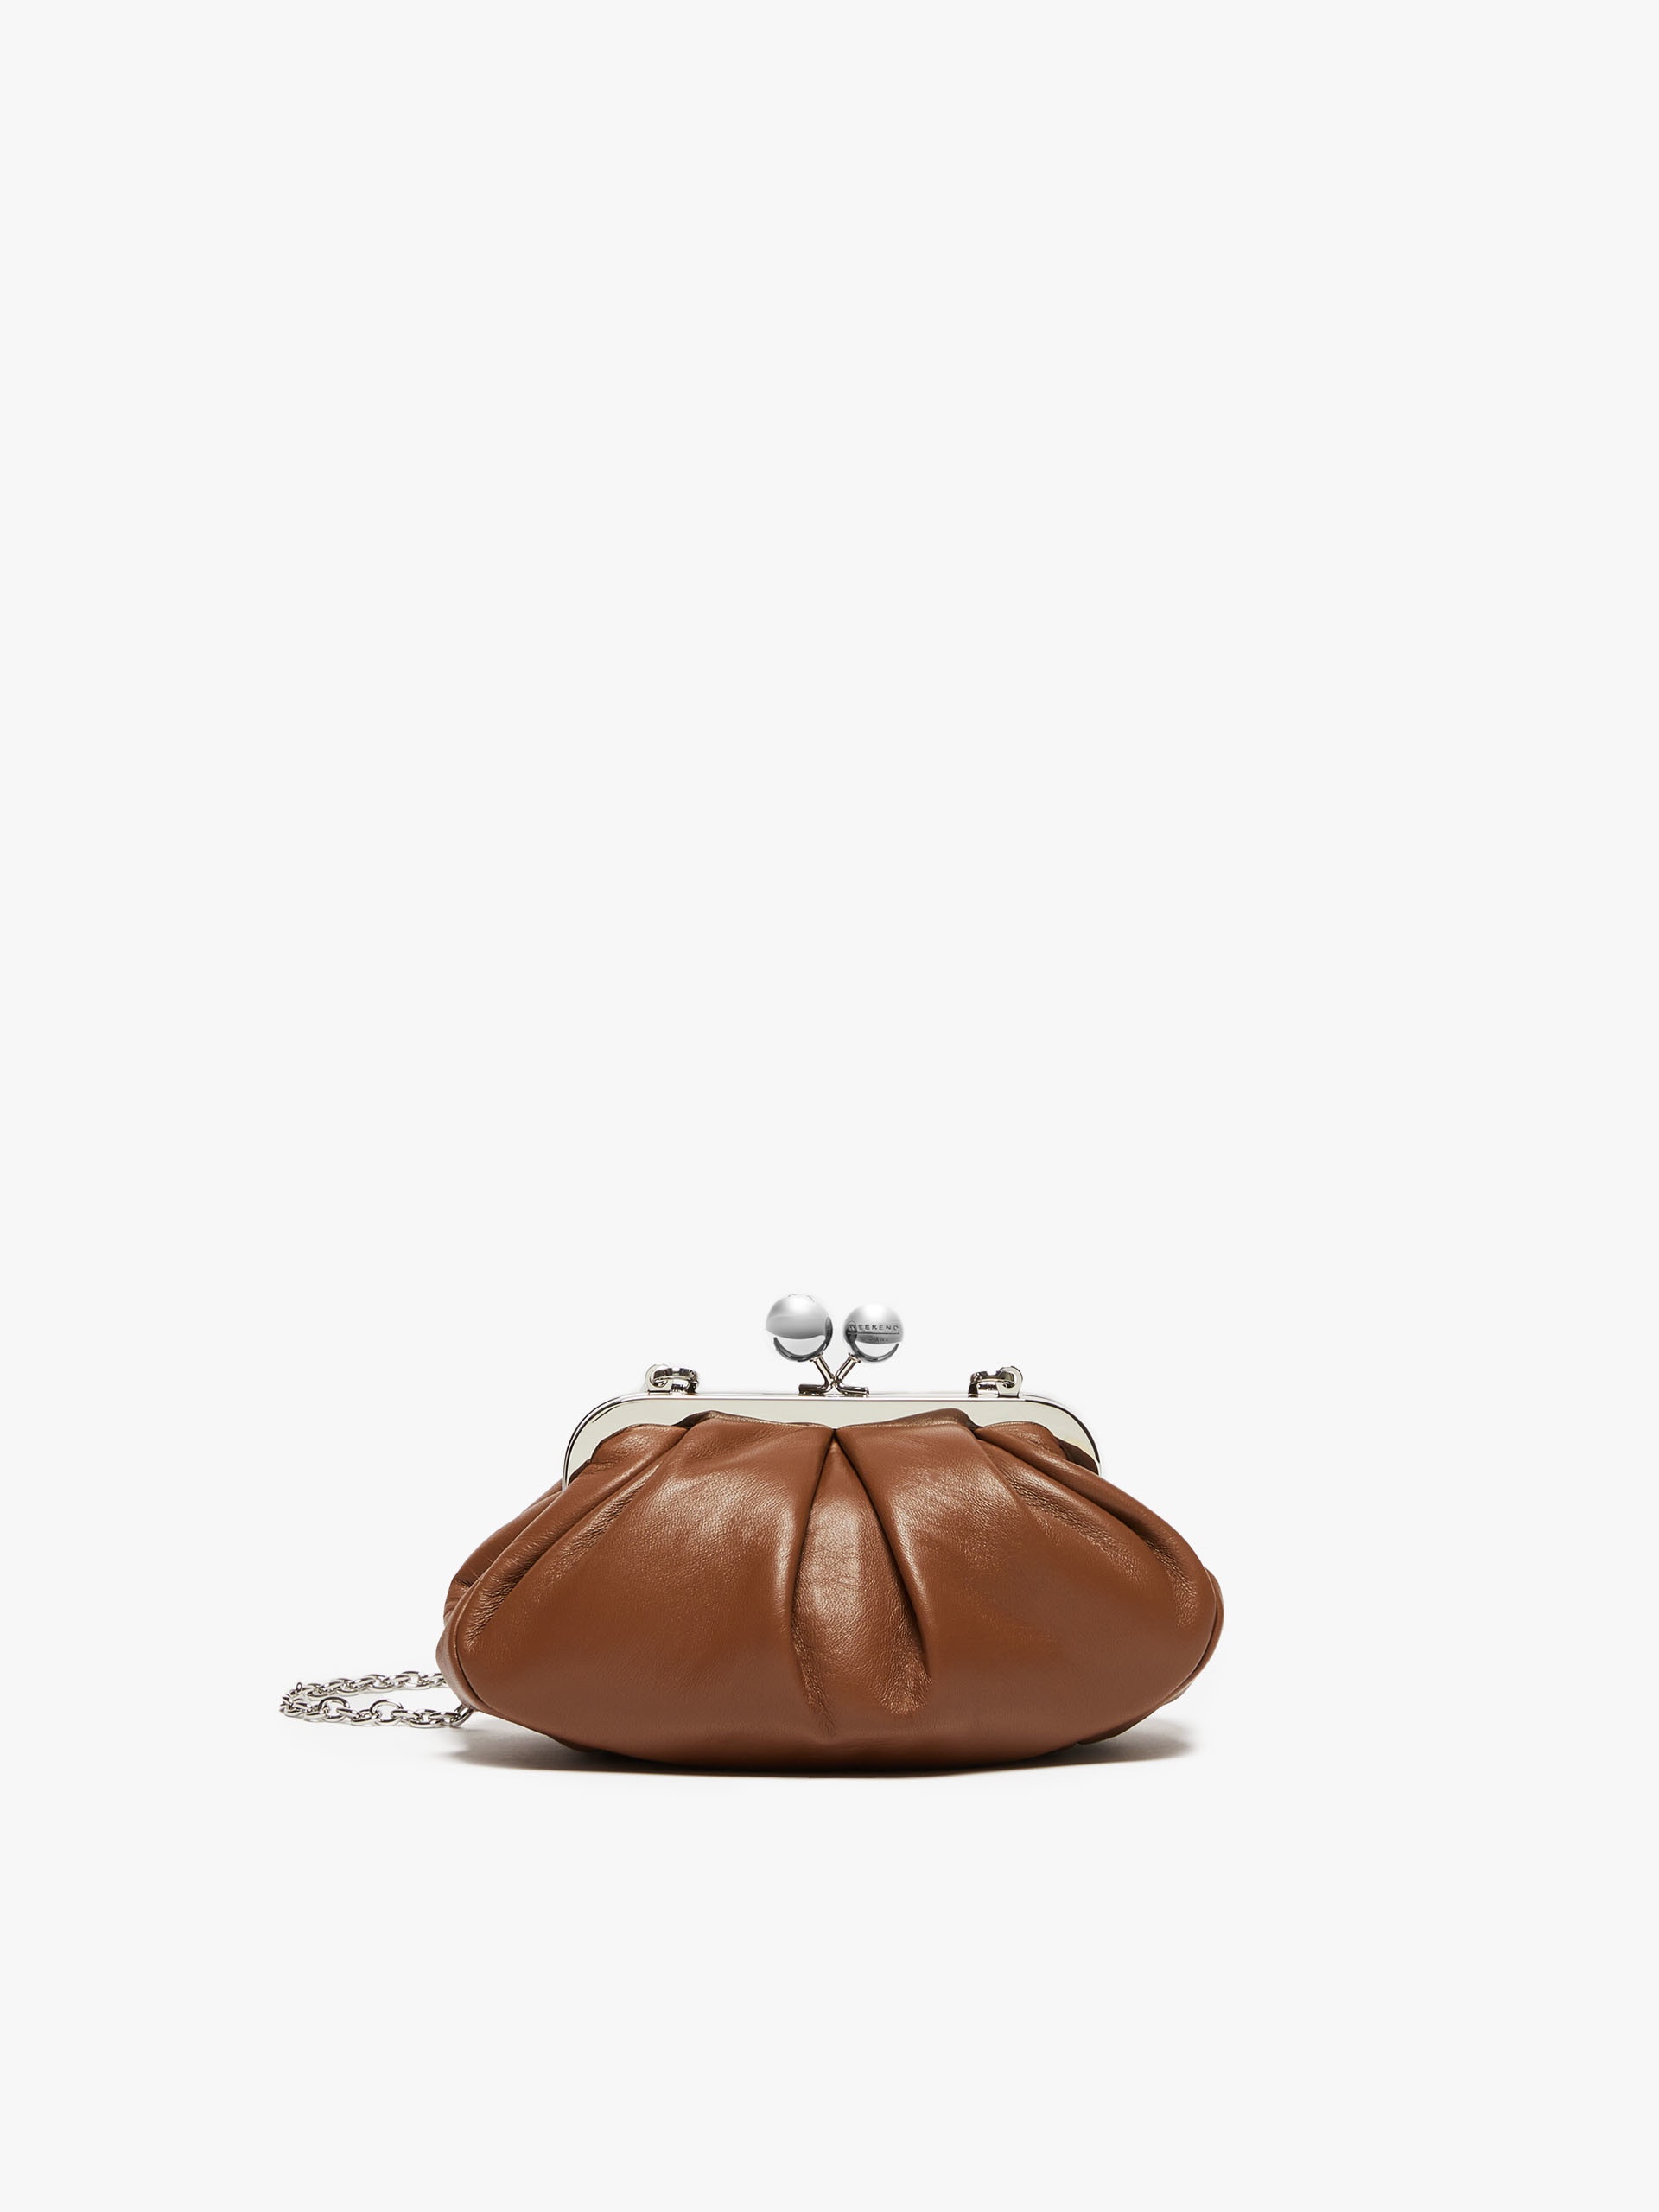 PRATI Small Pasticcino Bag in nappa leather - 1